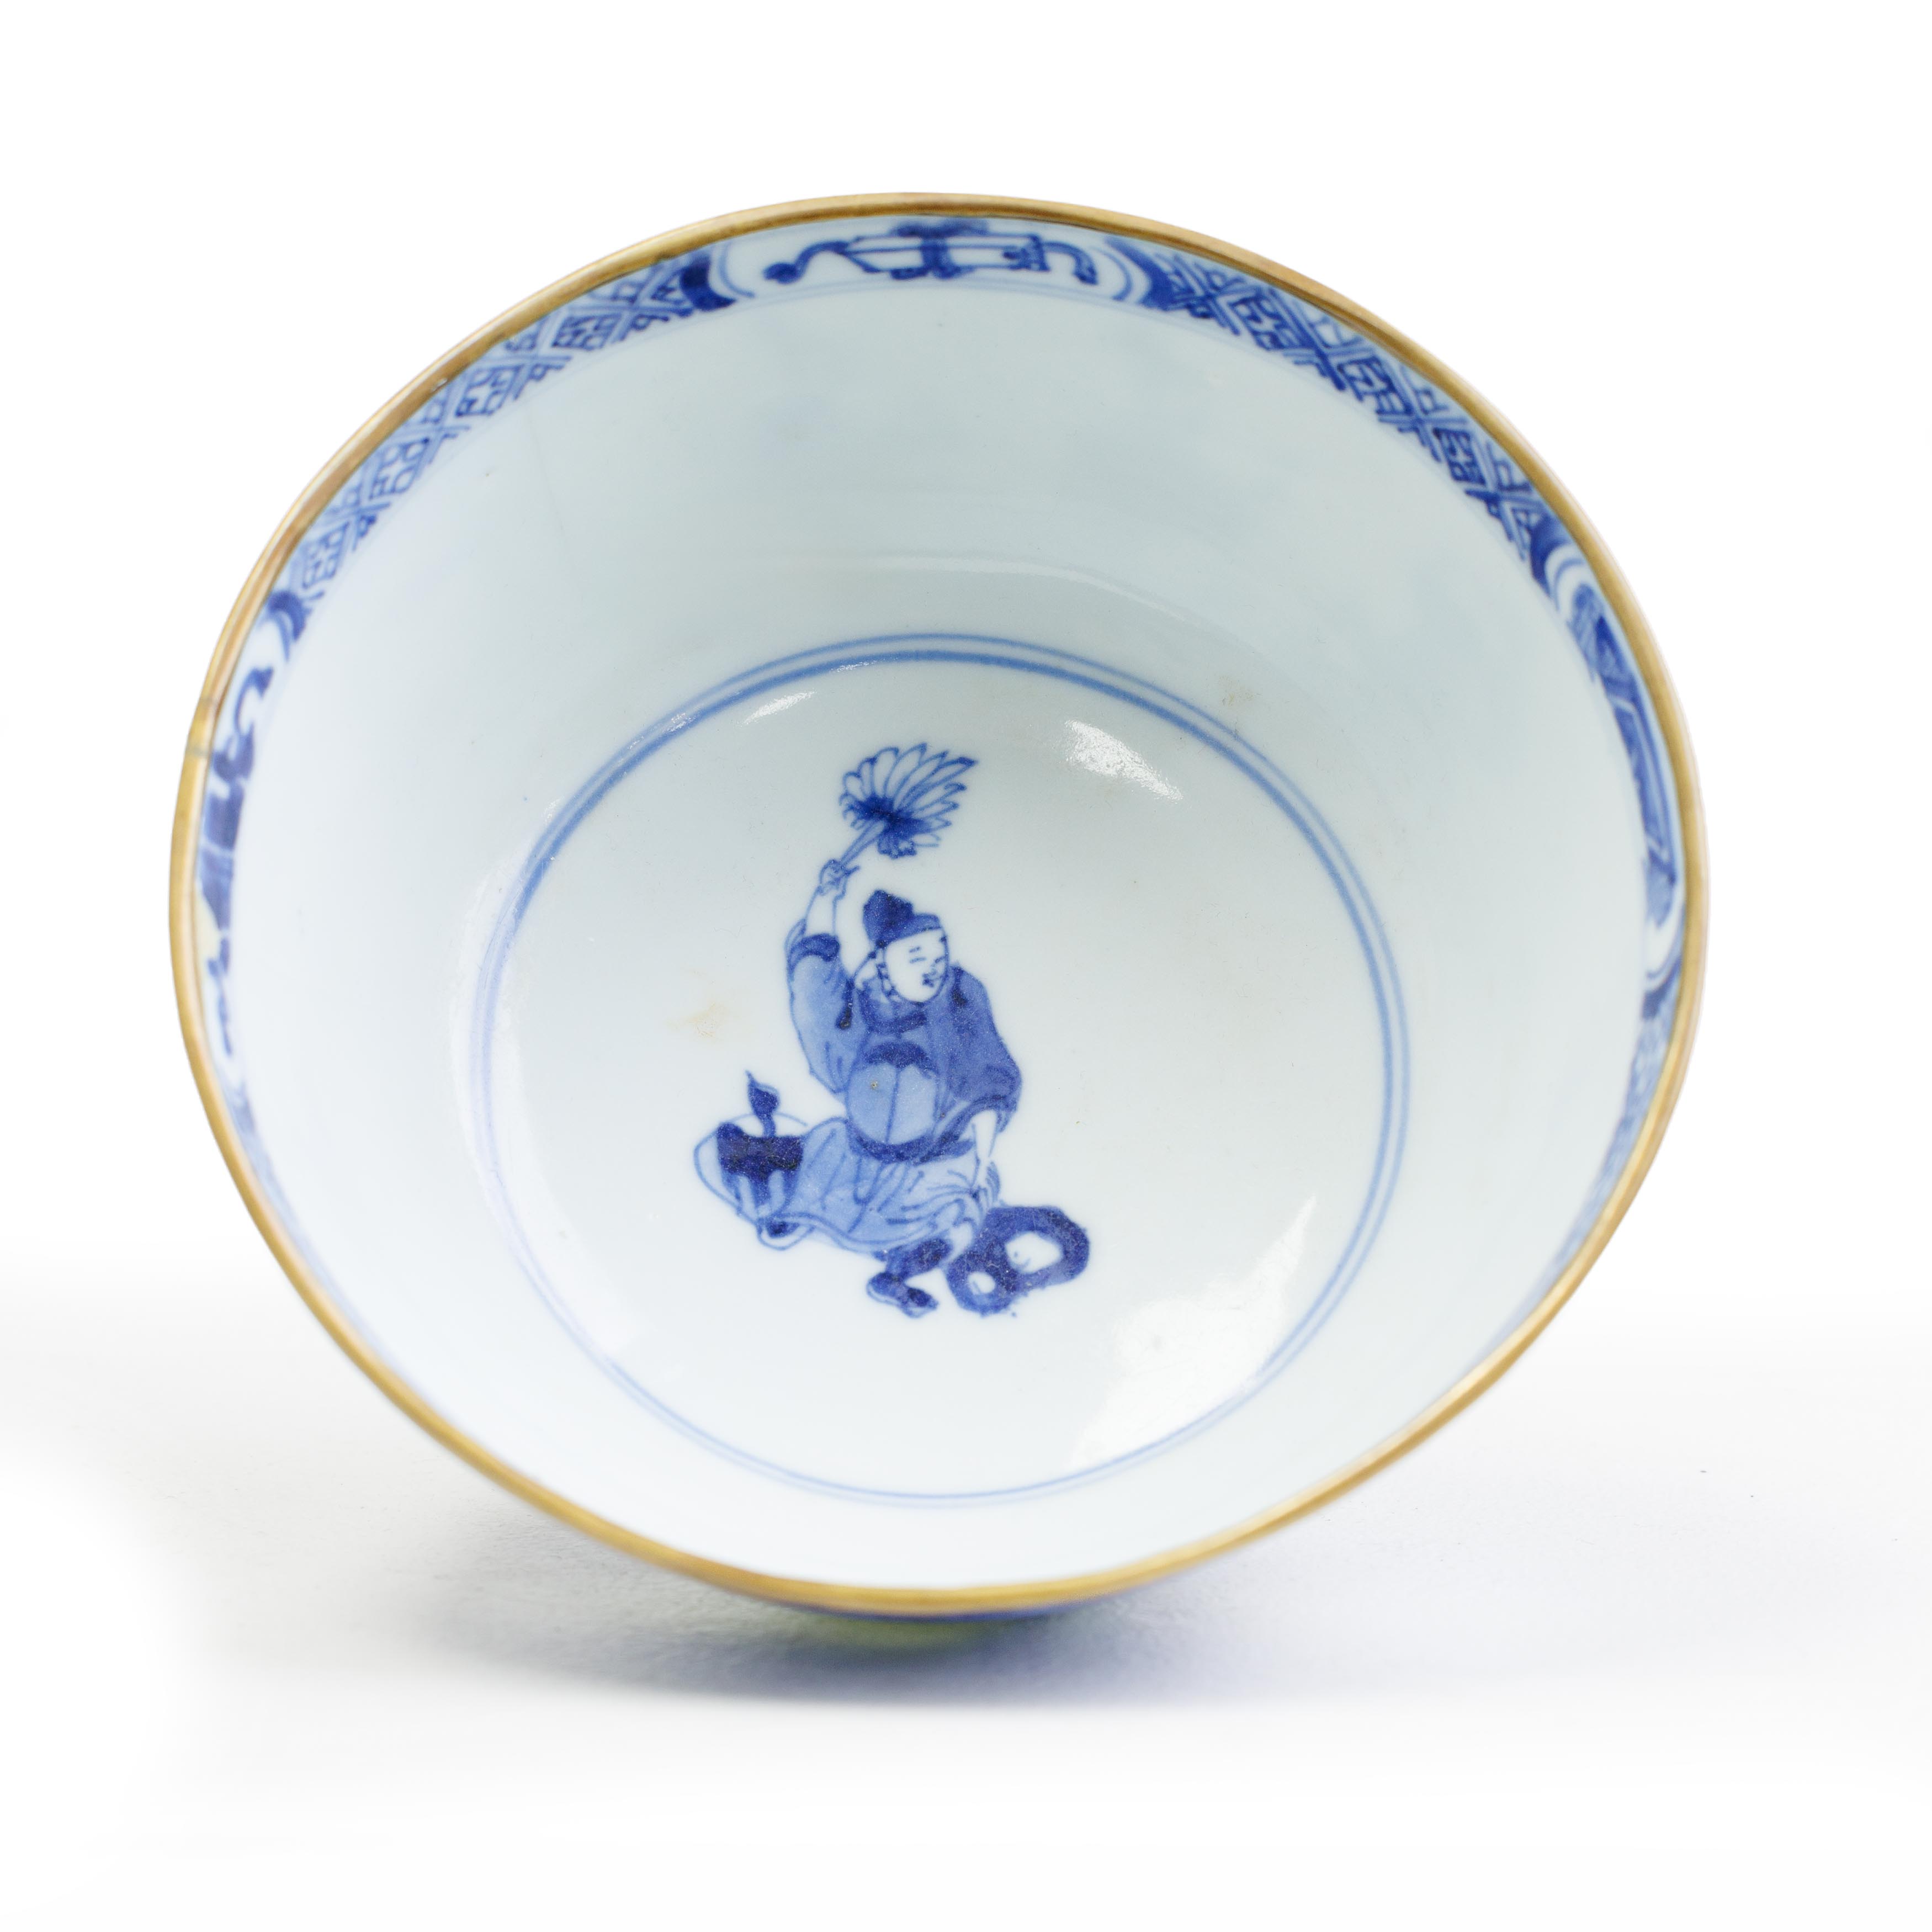 A Chinese blue and white 'Xi xiang ji' bowl Qing dynasty, Kangxi period, ruo shen zhen cang seal... - Image 3 of 4